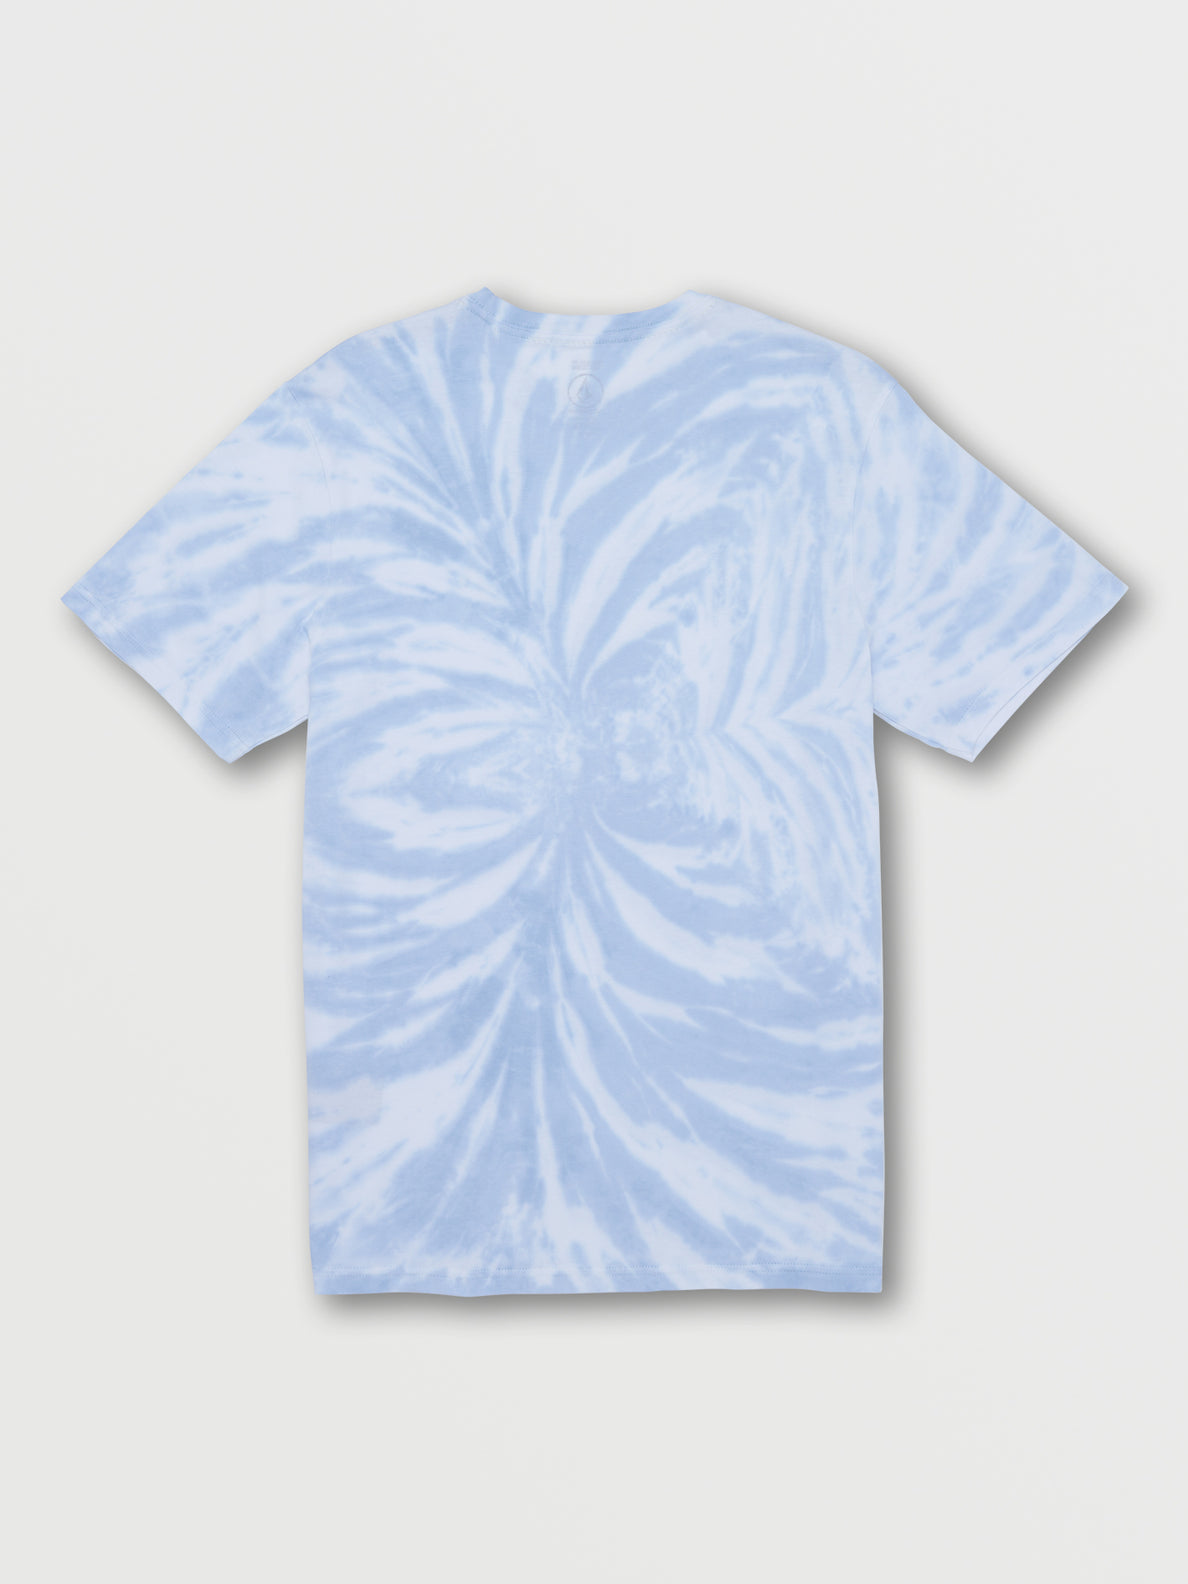 Iconic Stone Dye Short Sleeve Tee - Celestial Blue